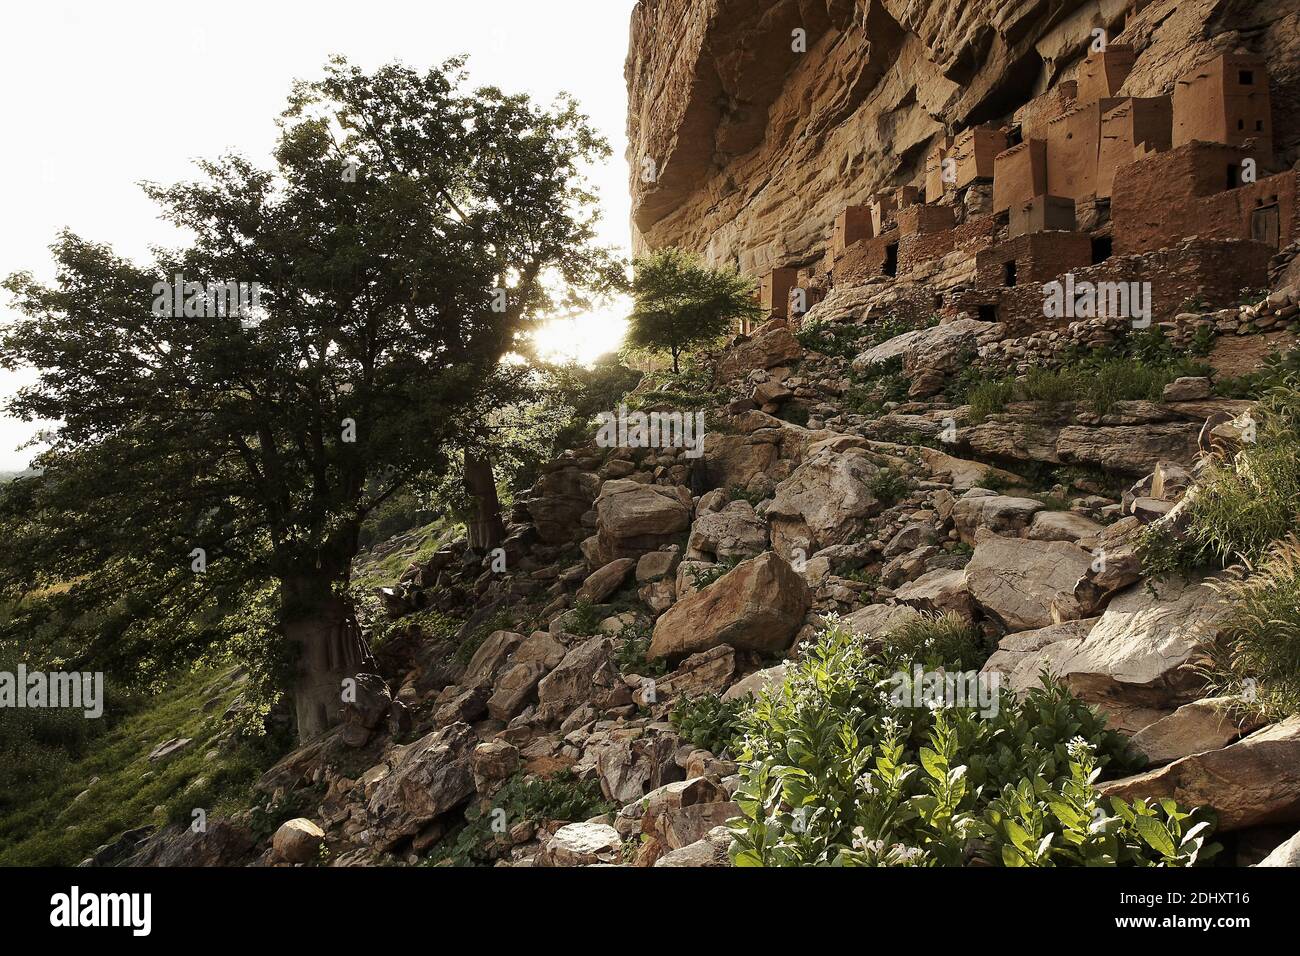 Afrique /Mali/ pays Dogon/village Dogon Teli construit dans le grès Cliff.Tabaco plantes sont en croissance entre les rochers Banque D'Images